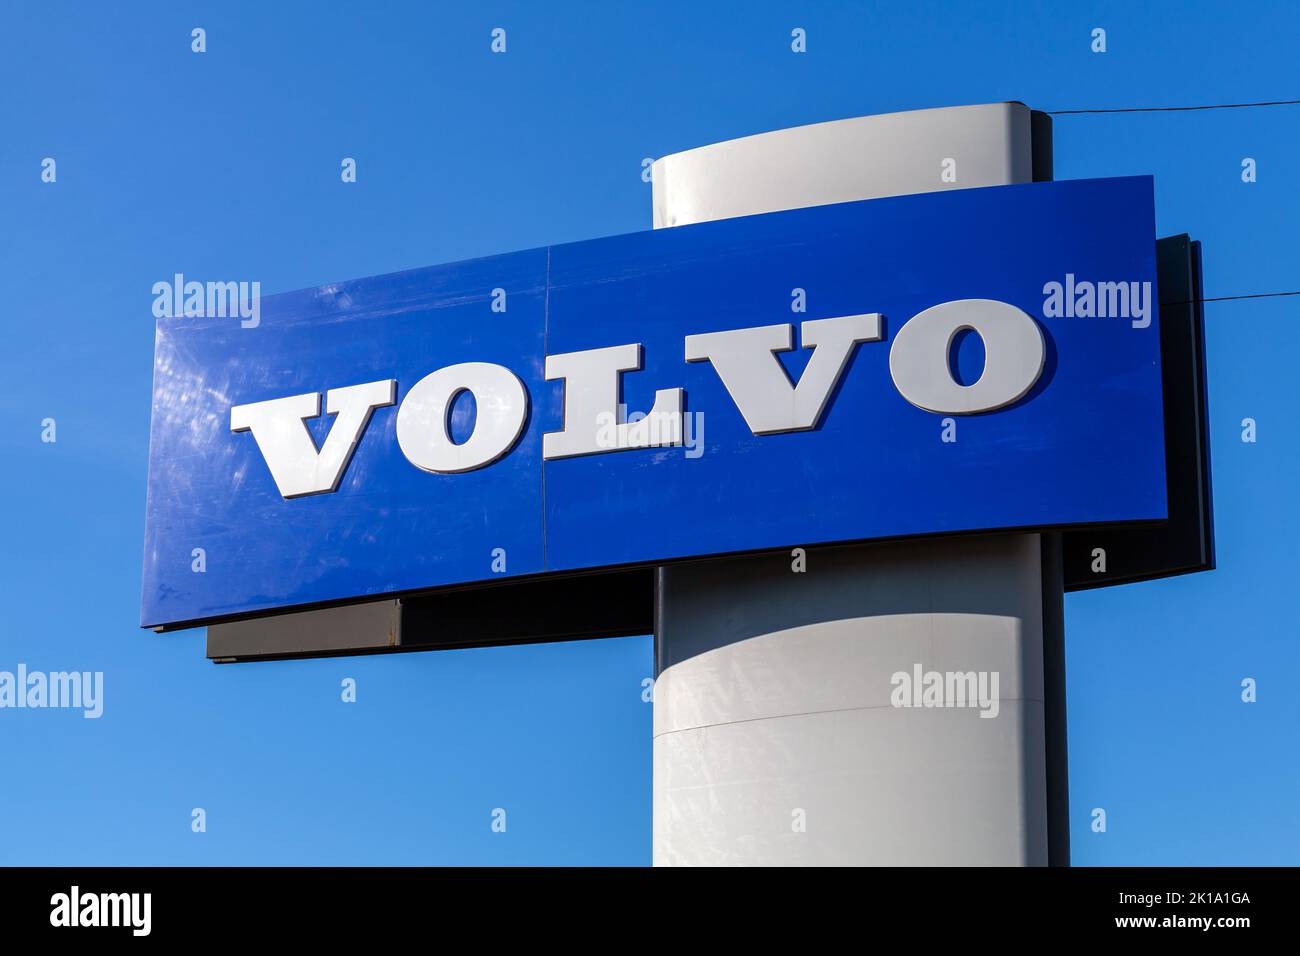 San Petersburgo, Rusia - 09 de agosto de 2022: Texto de la marca Volvo montado en un poste publicitario en un día soleado Foto de stock